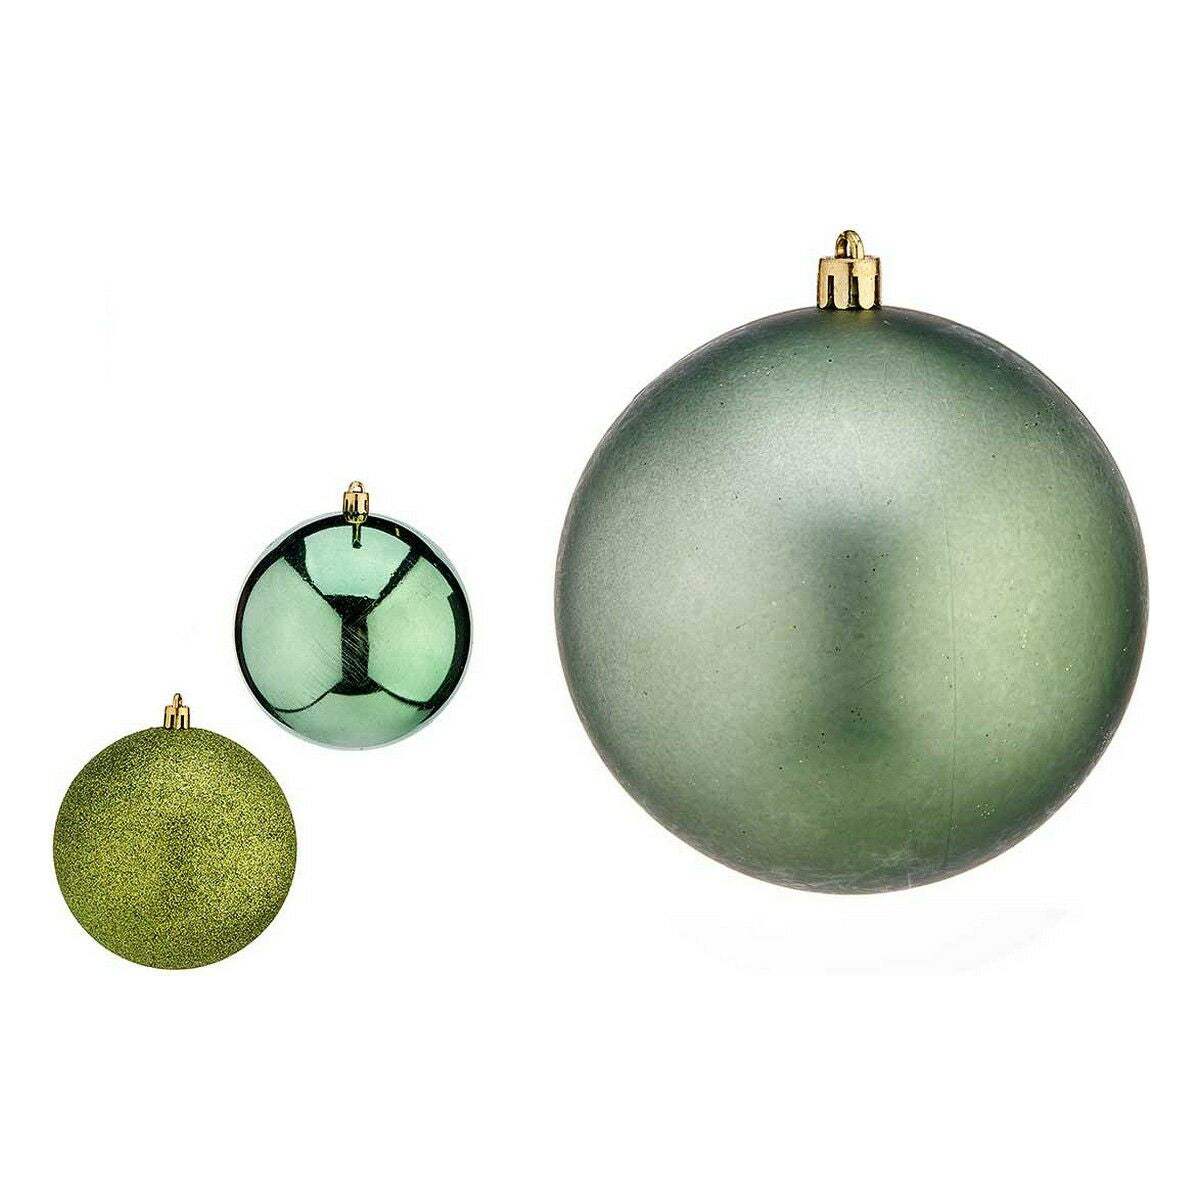 Weihnachtsbaumkugeln Ø 10 cm grün Kunststoff 10 x 11 x 10 cm